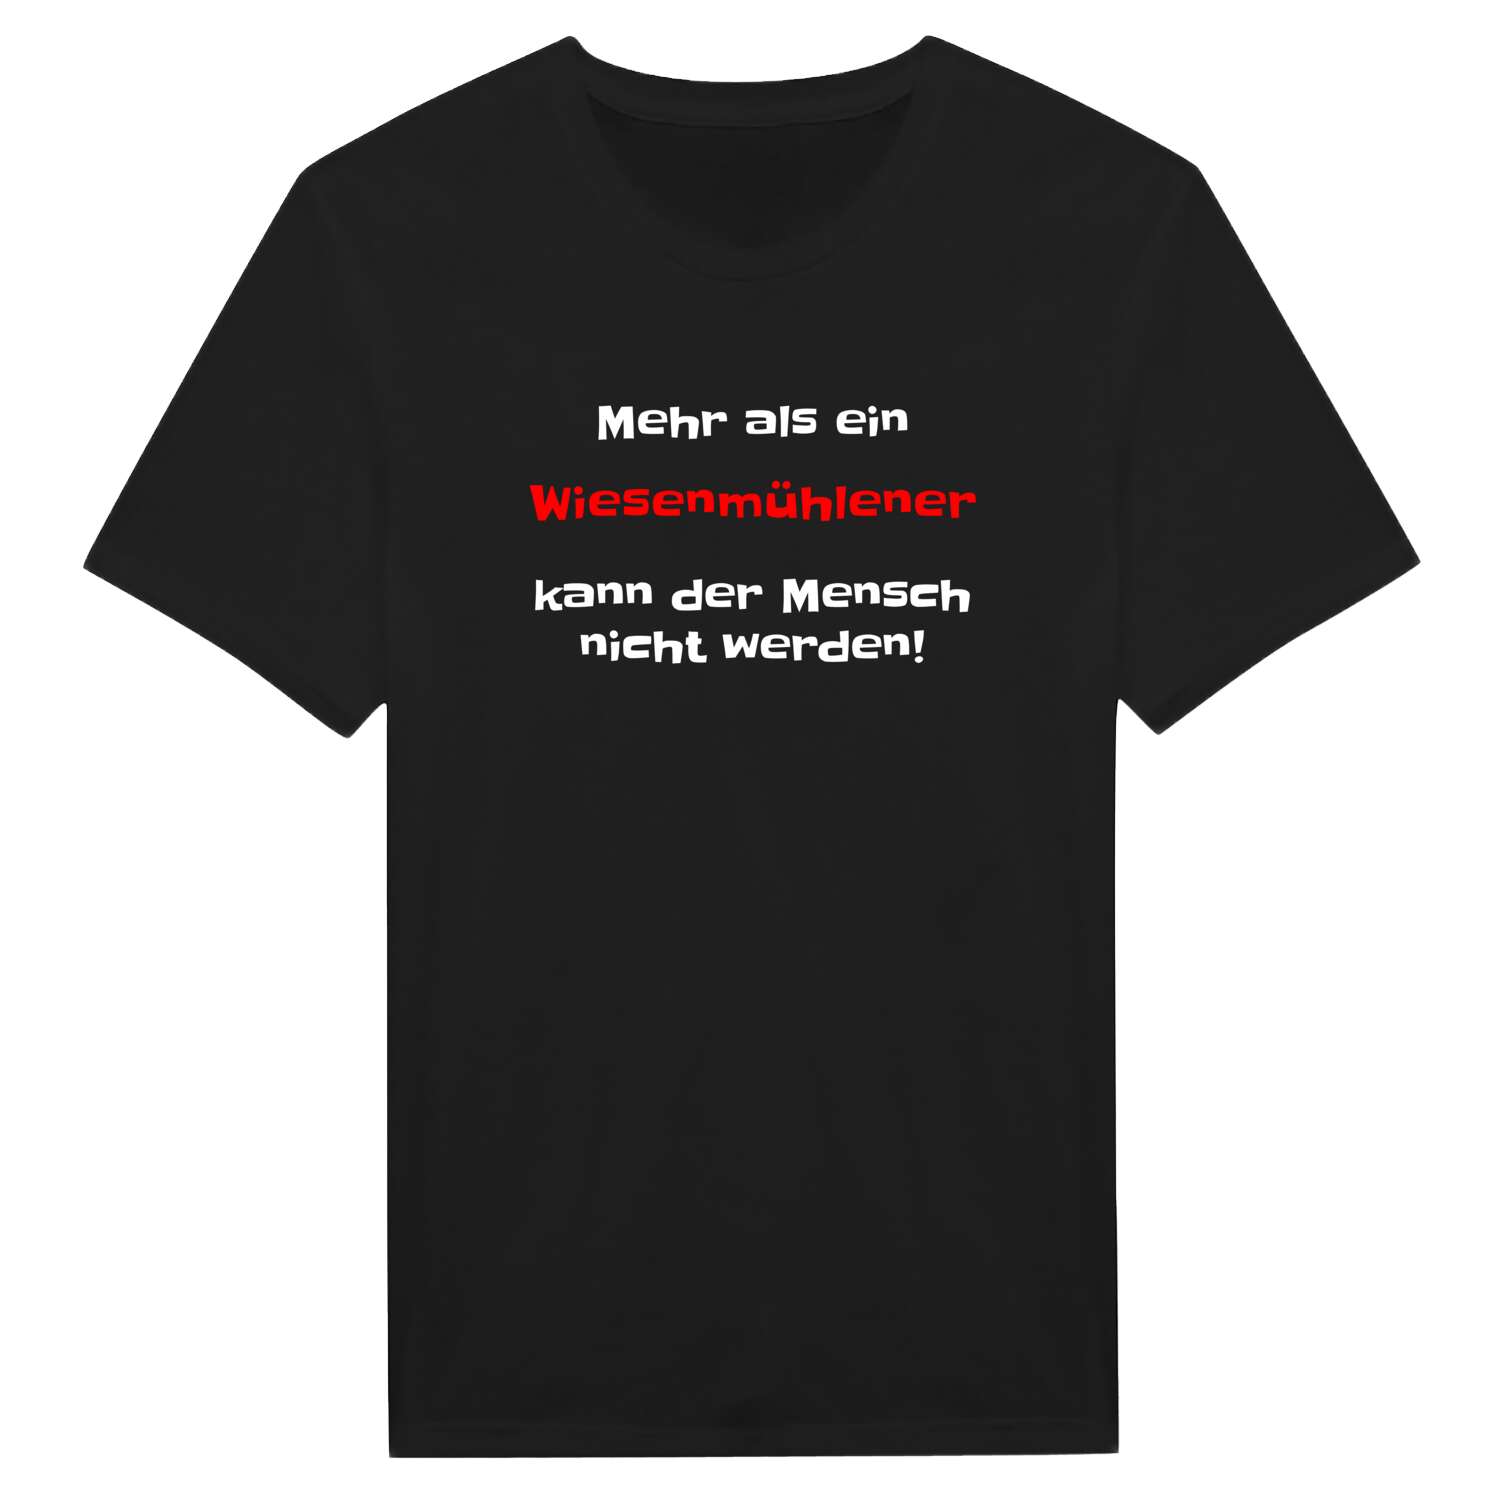 Wiesenmühle T-Shirt »Mehr als ein«